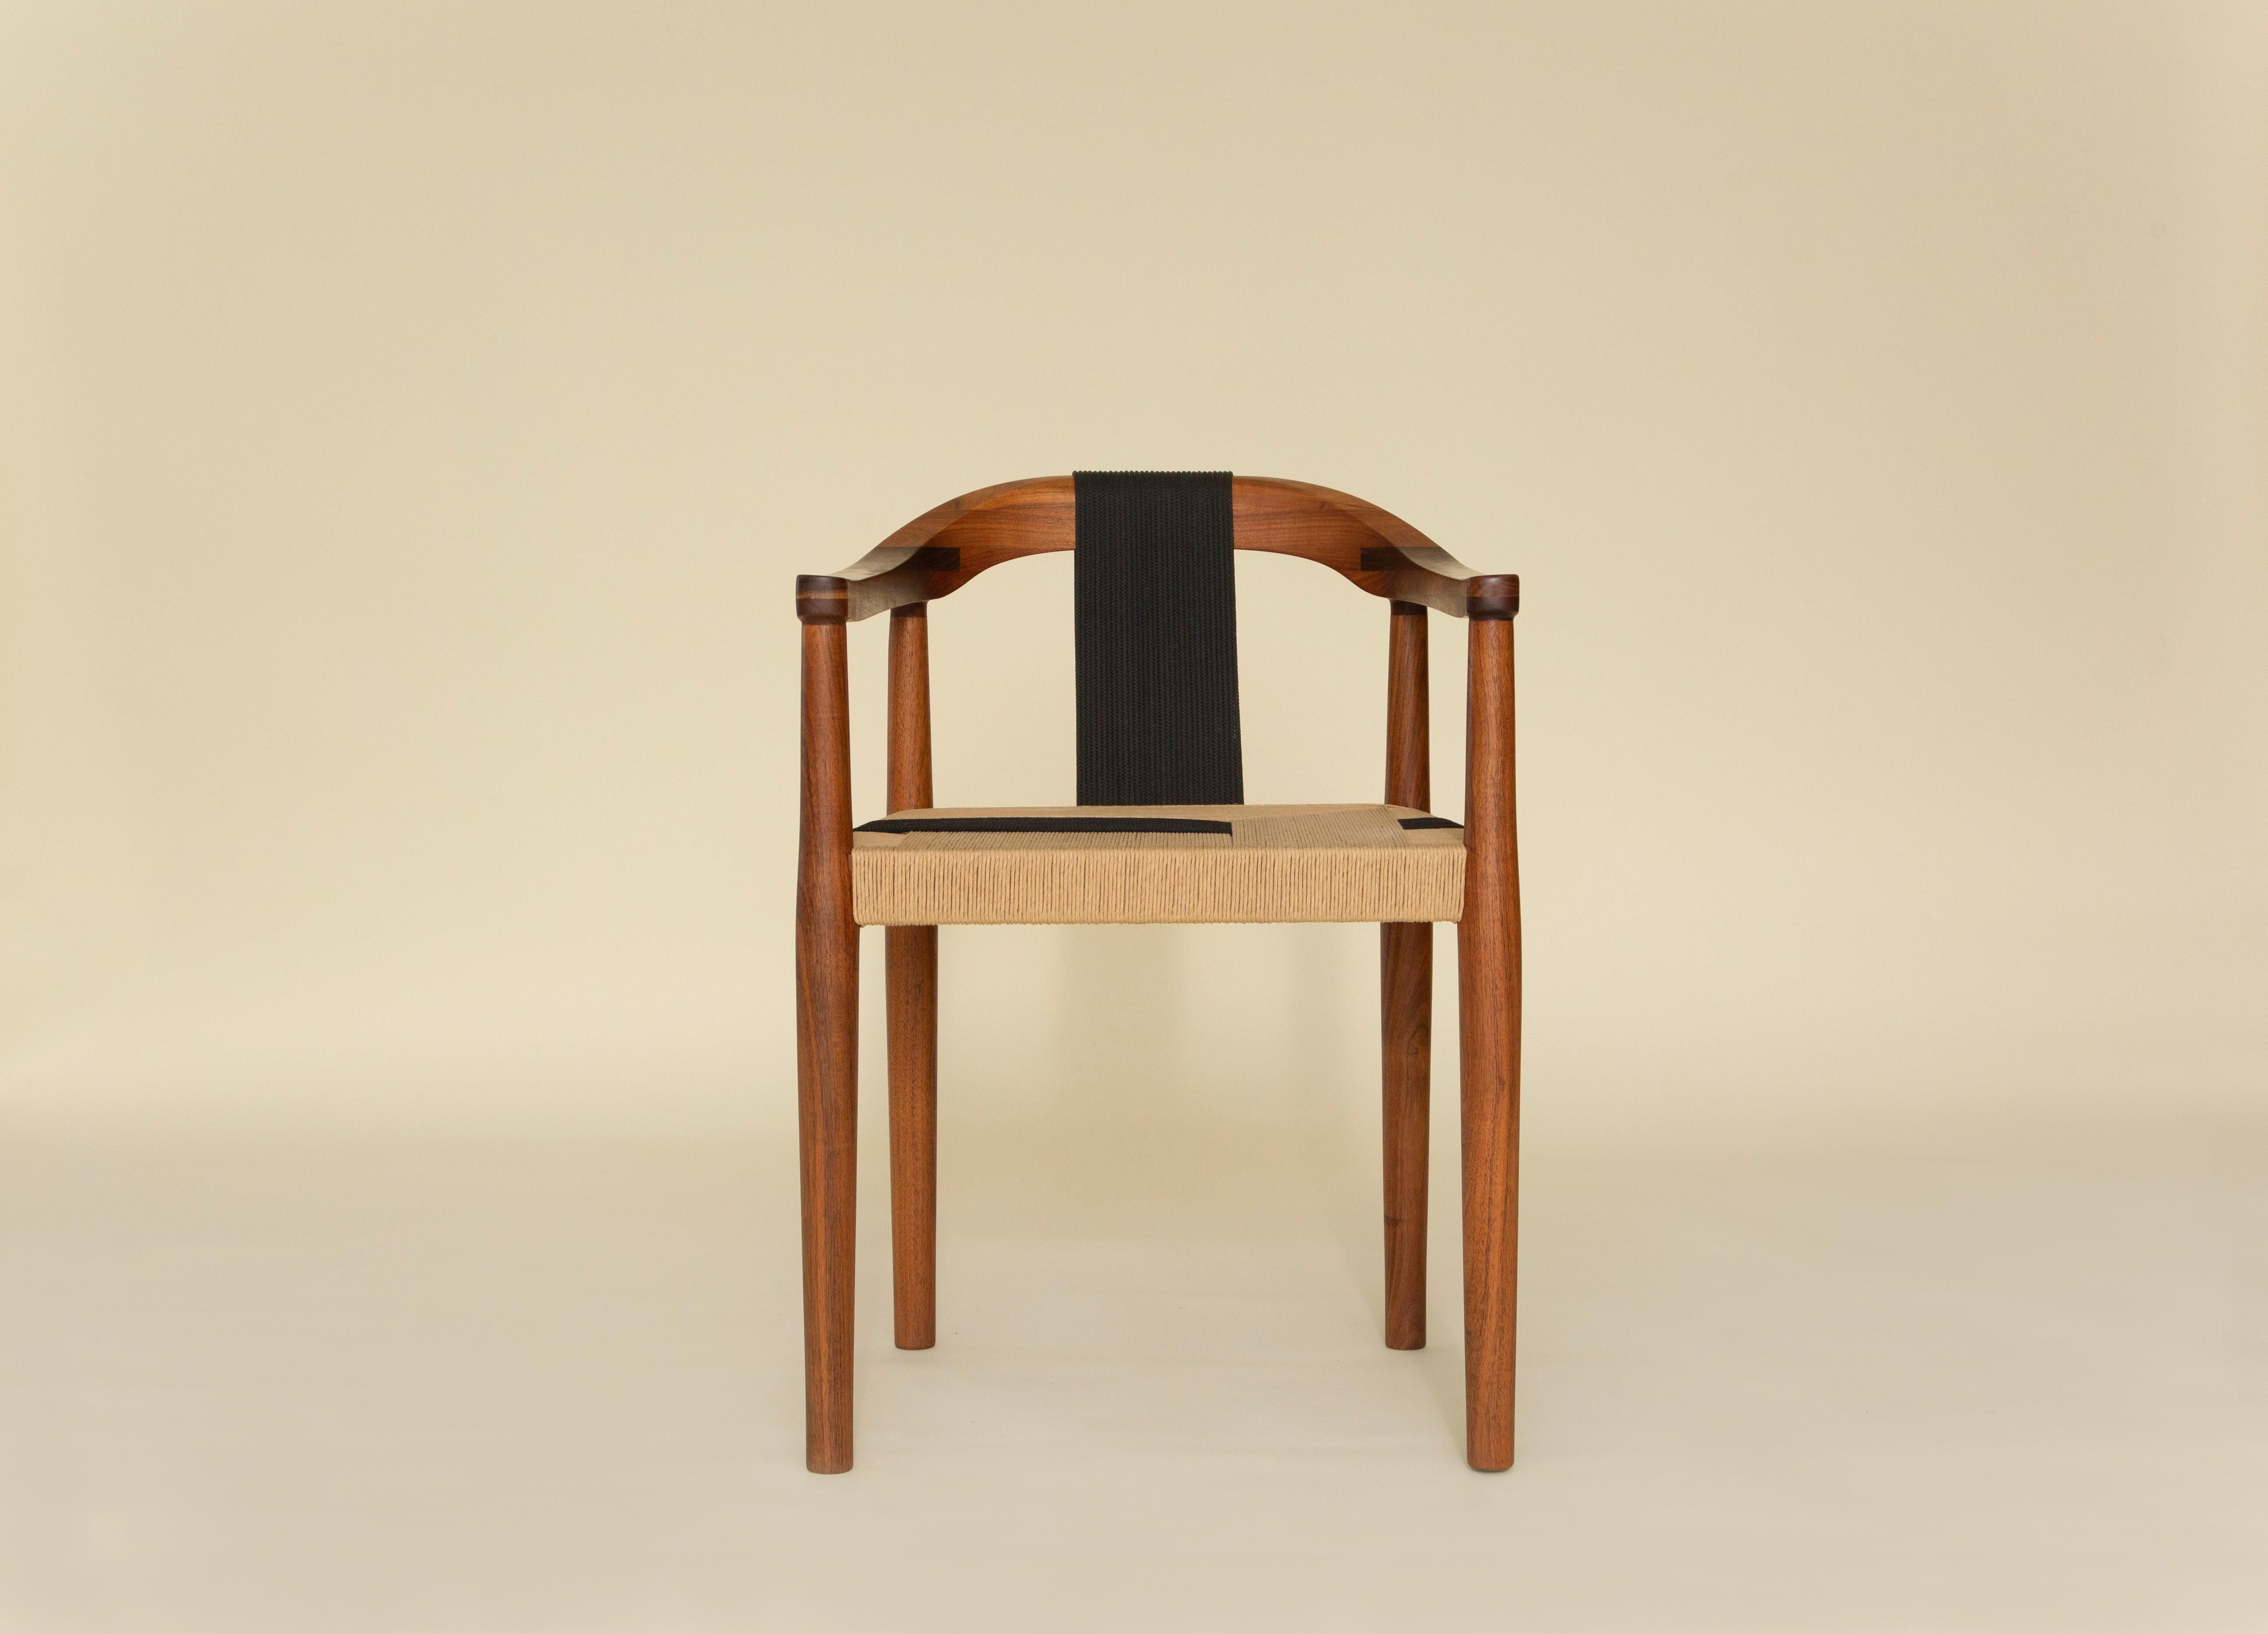 Der mit Präzision und Sorgfalt gefertigte Stuhl Emma ist ein Zeugnis des reichen Erbes mexikanischer Handwerkskunst. Jeder Stuhl ist ein einzigartiges Kunstwerk, in dem sich die geschickten Hände widerspiegeln, die die altehrwürdigen Techniken zum